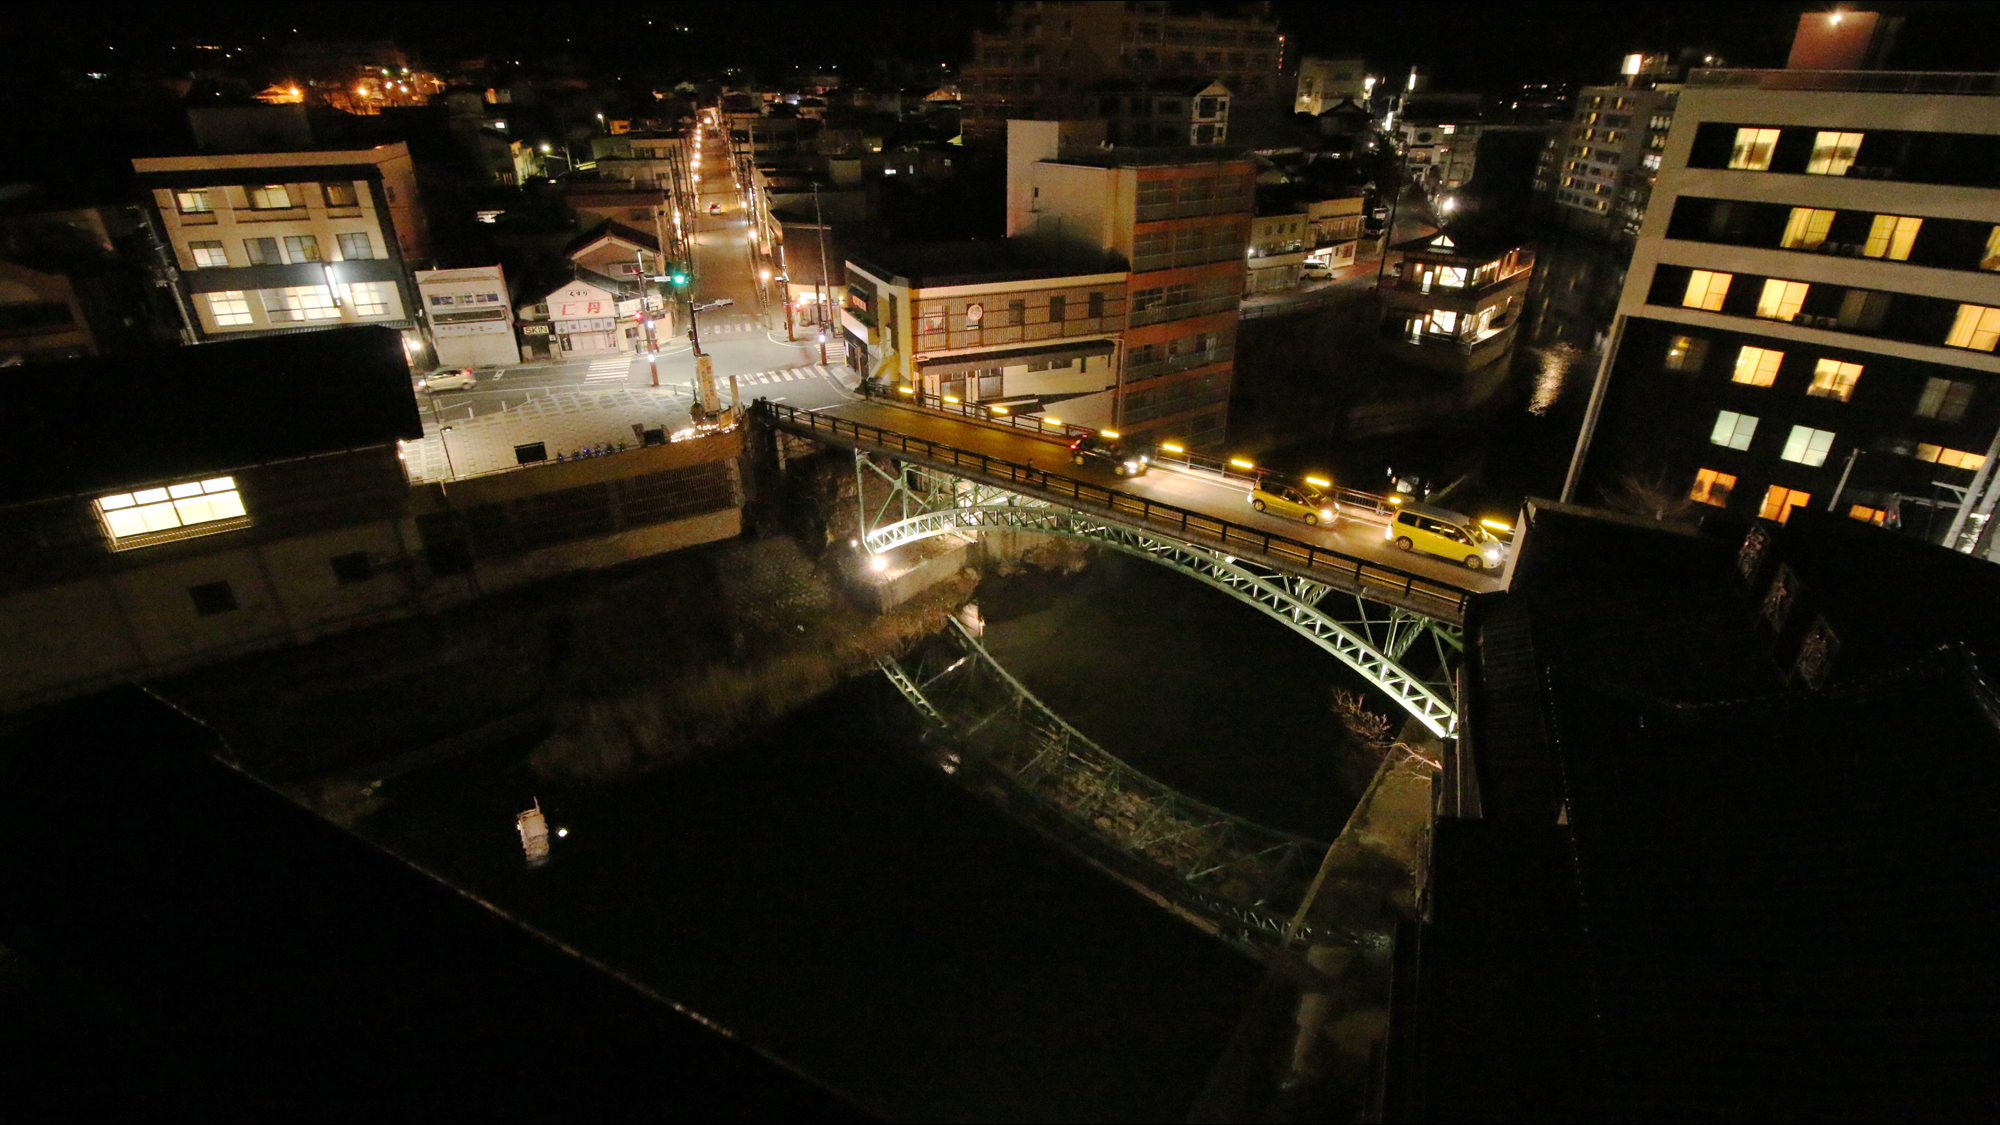 目の前の川に架かる橋は飯坂温泉のシンボル。昔は渡りの舟が出ていたそうな…